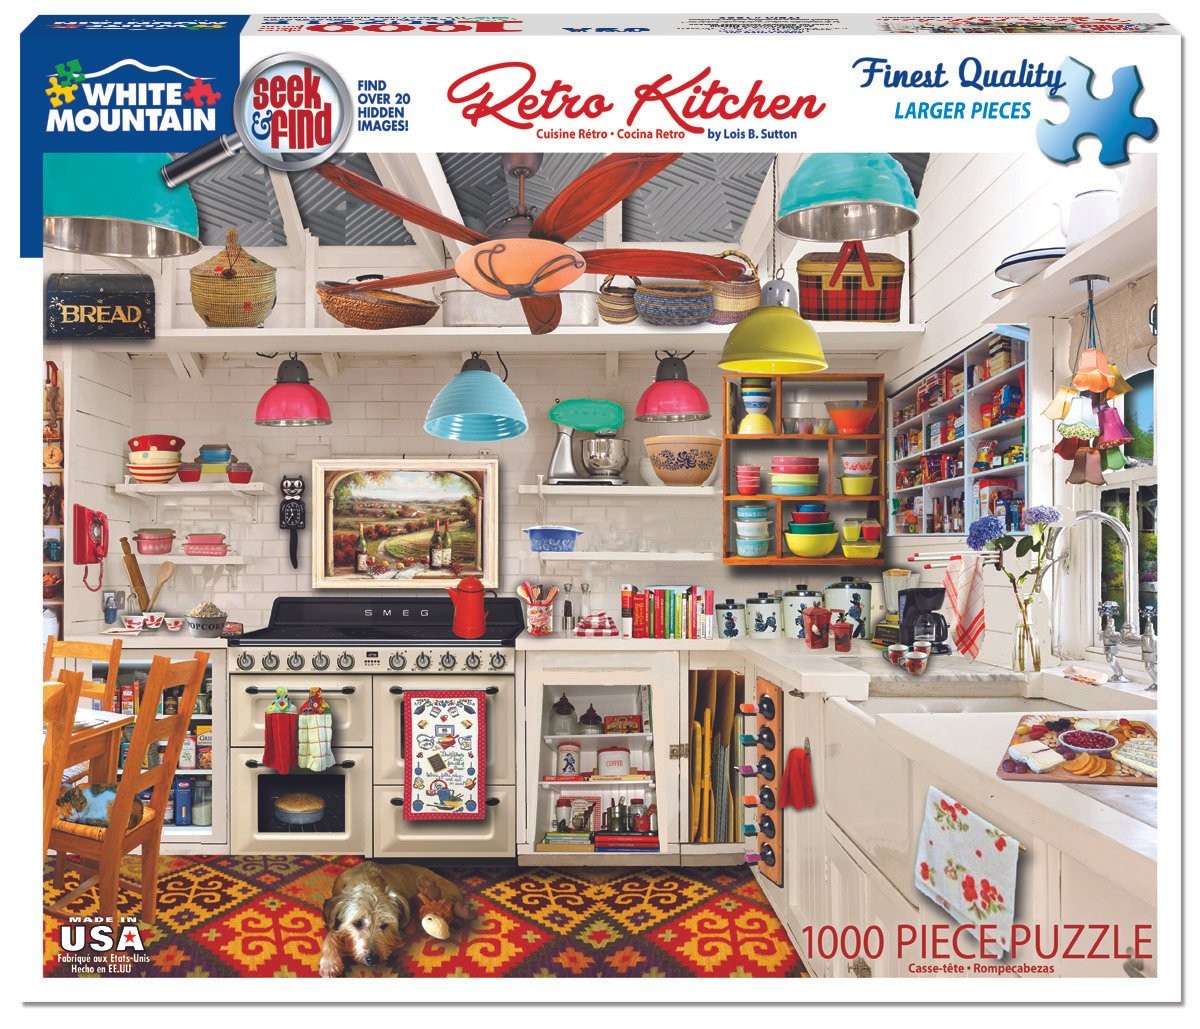 Retro Kitchen Seek & Find 1000 Piece Jigsaw Puzzle